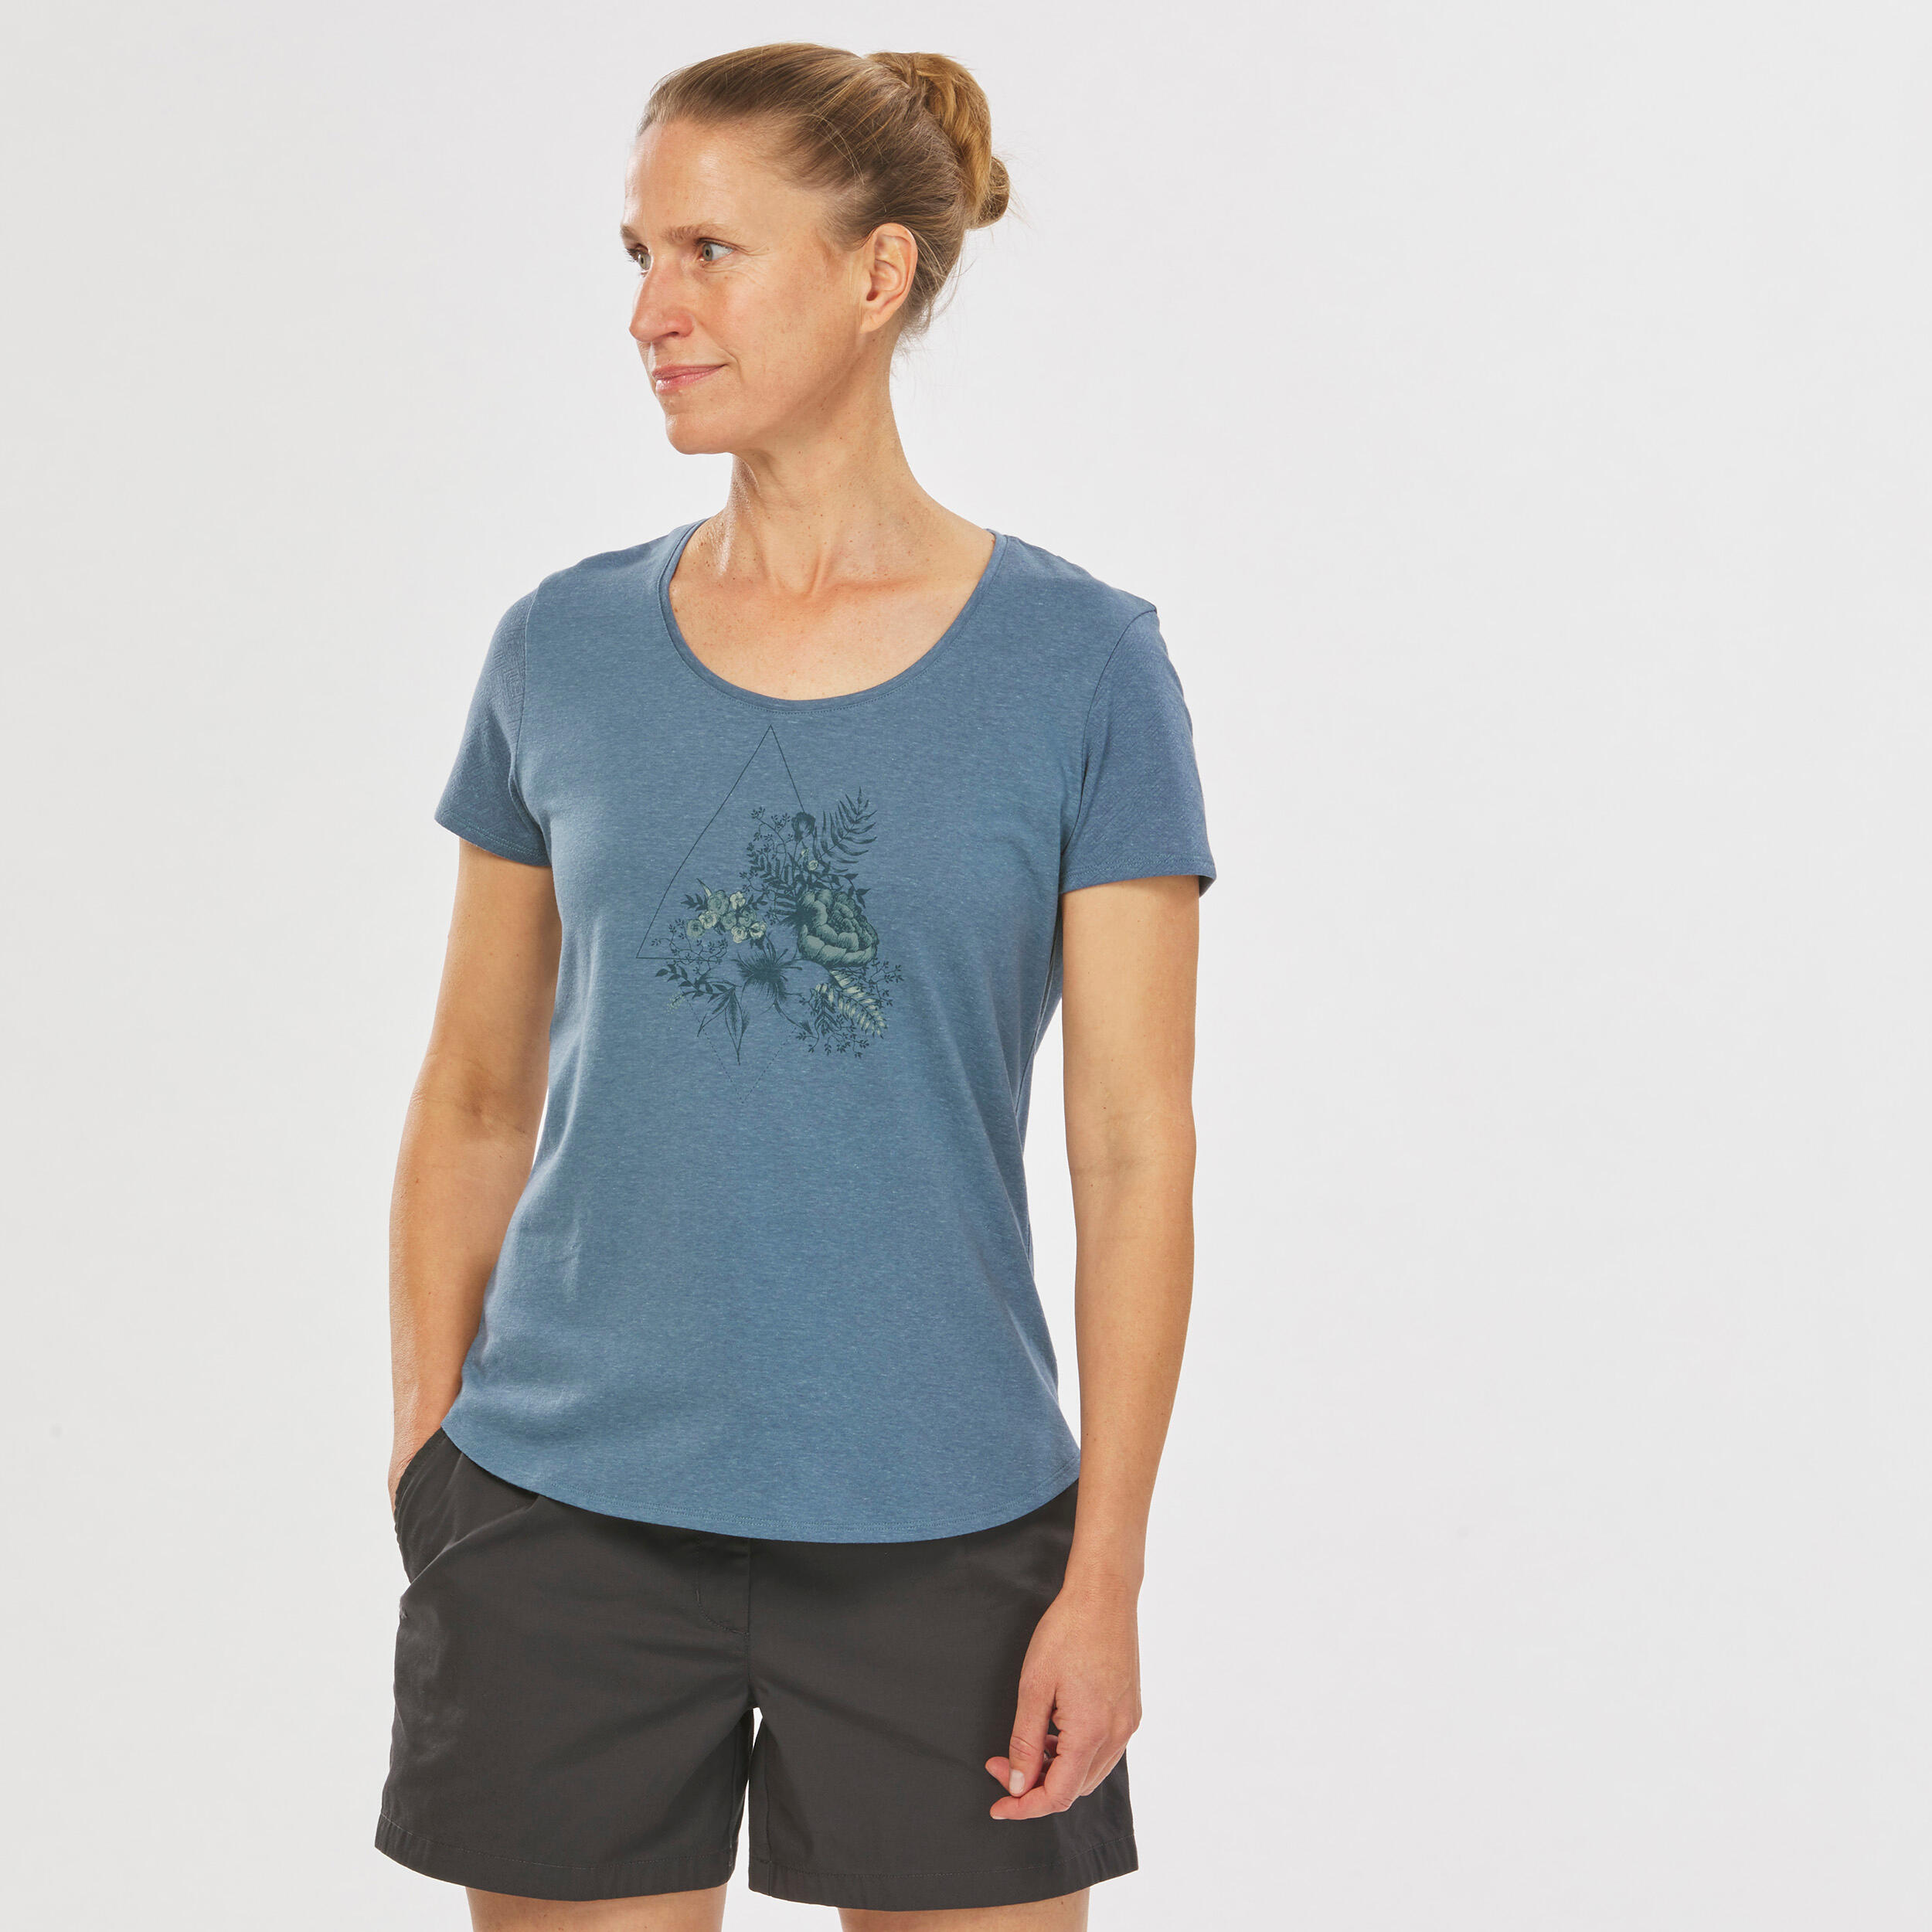 Women's Hiking T-shirt - NH500 1/4